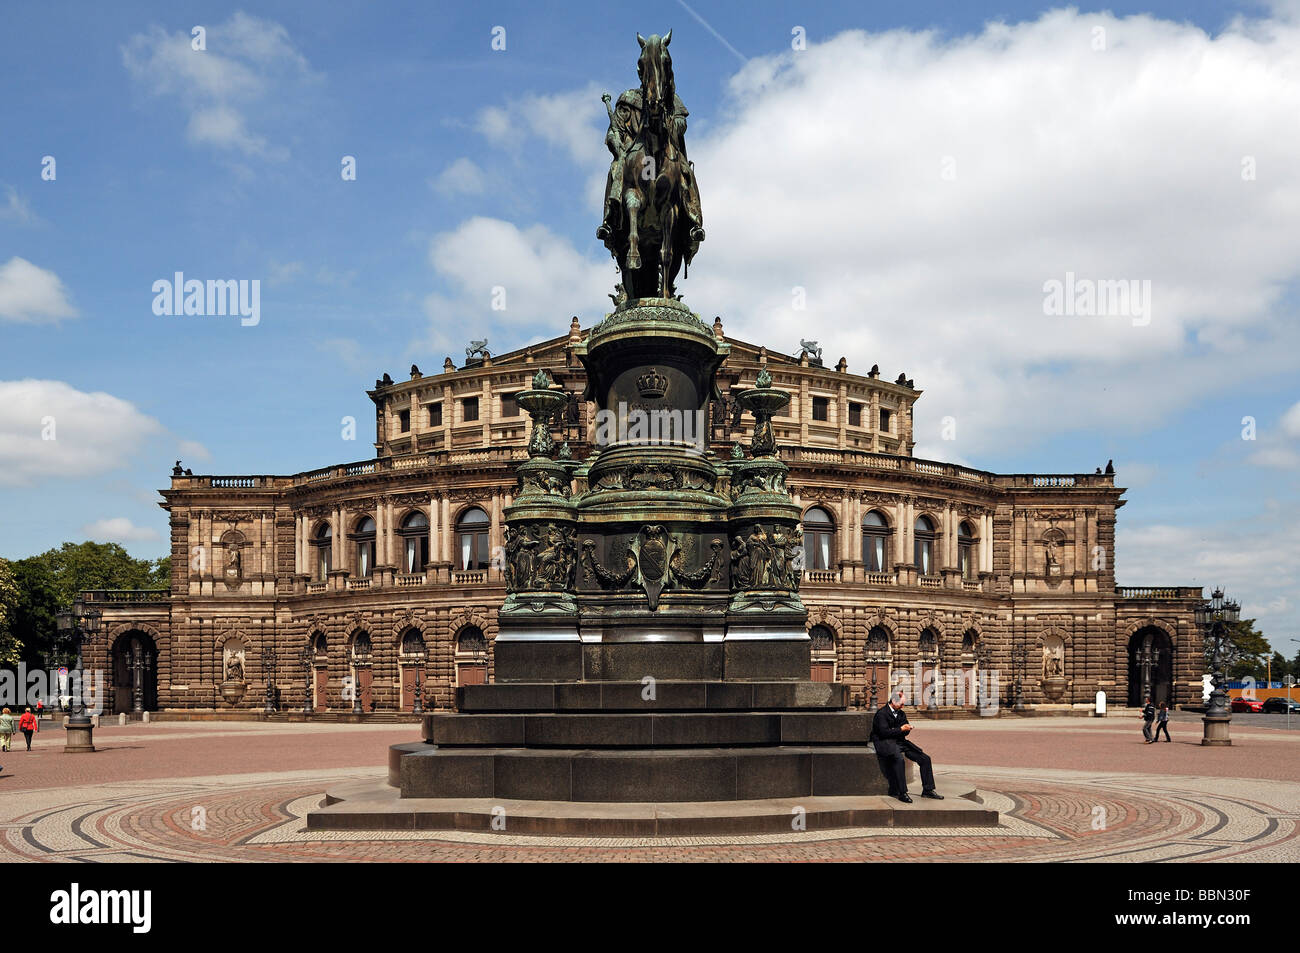 Un monumento di Re Johann, costruito nel 1889, Semper Opera sul retro, Dresda, Sassonia, Germania, Europa Foto Stock